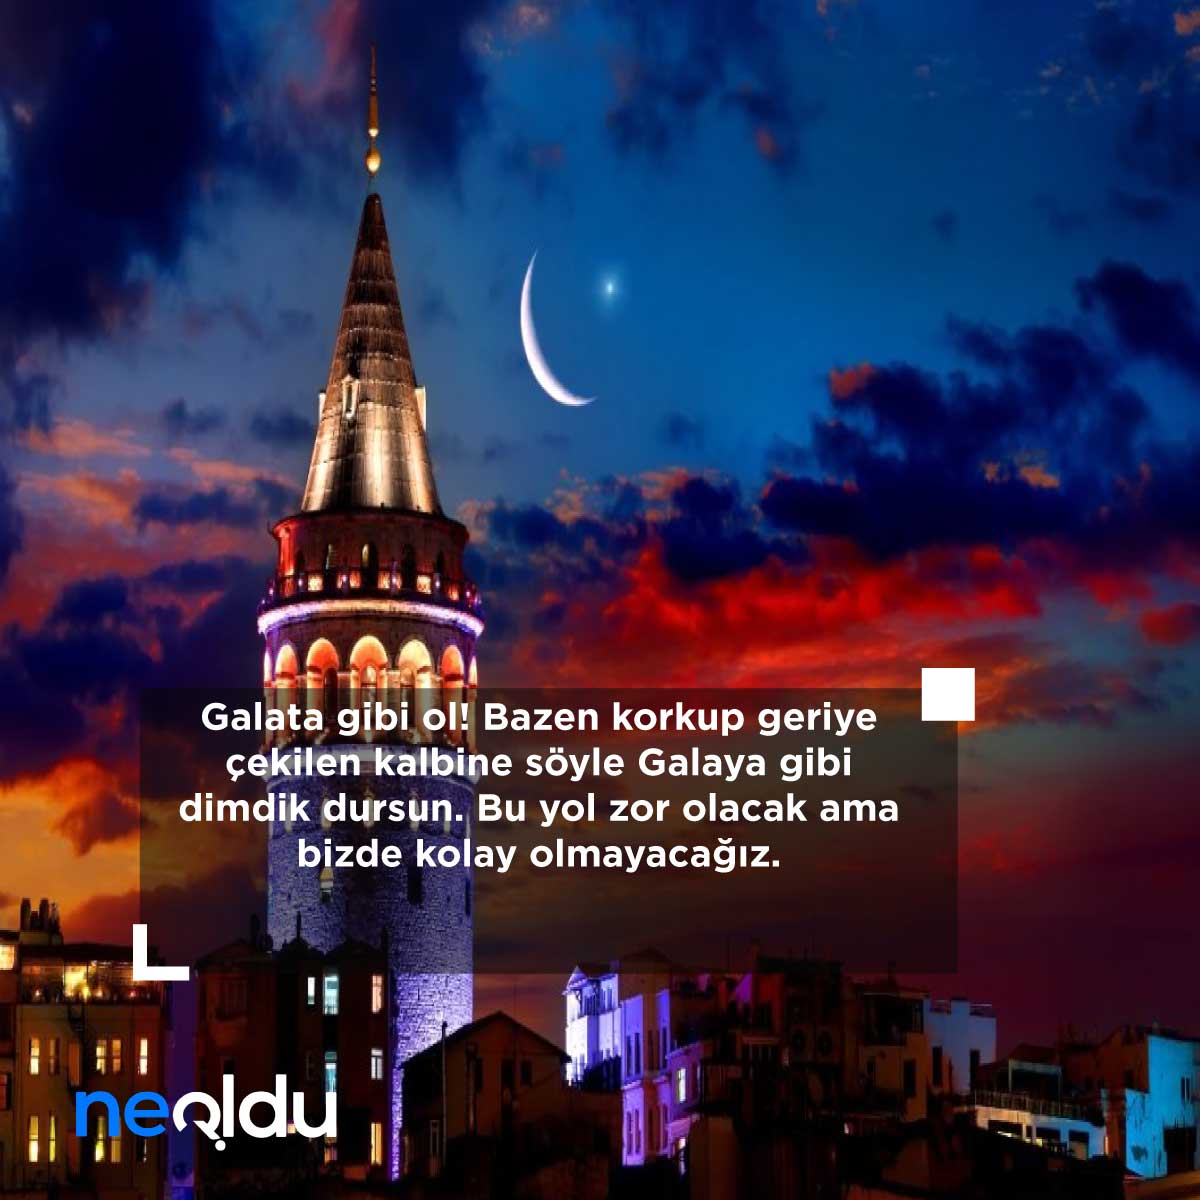 İstanbul ile İlgili Sözler ve Şiirler, İçinde İstanbul Geçen Aşk Sözleri